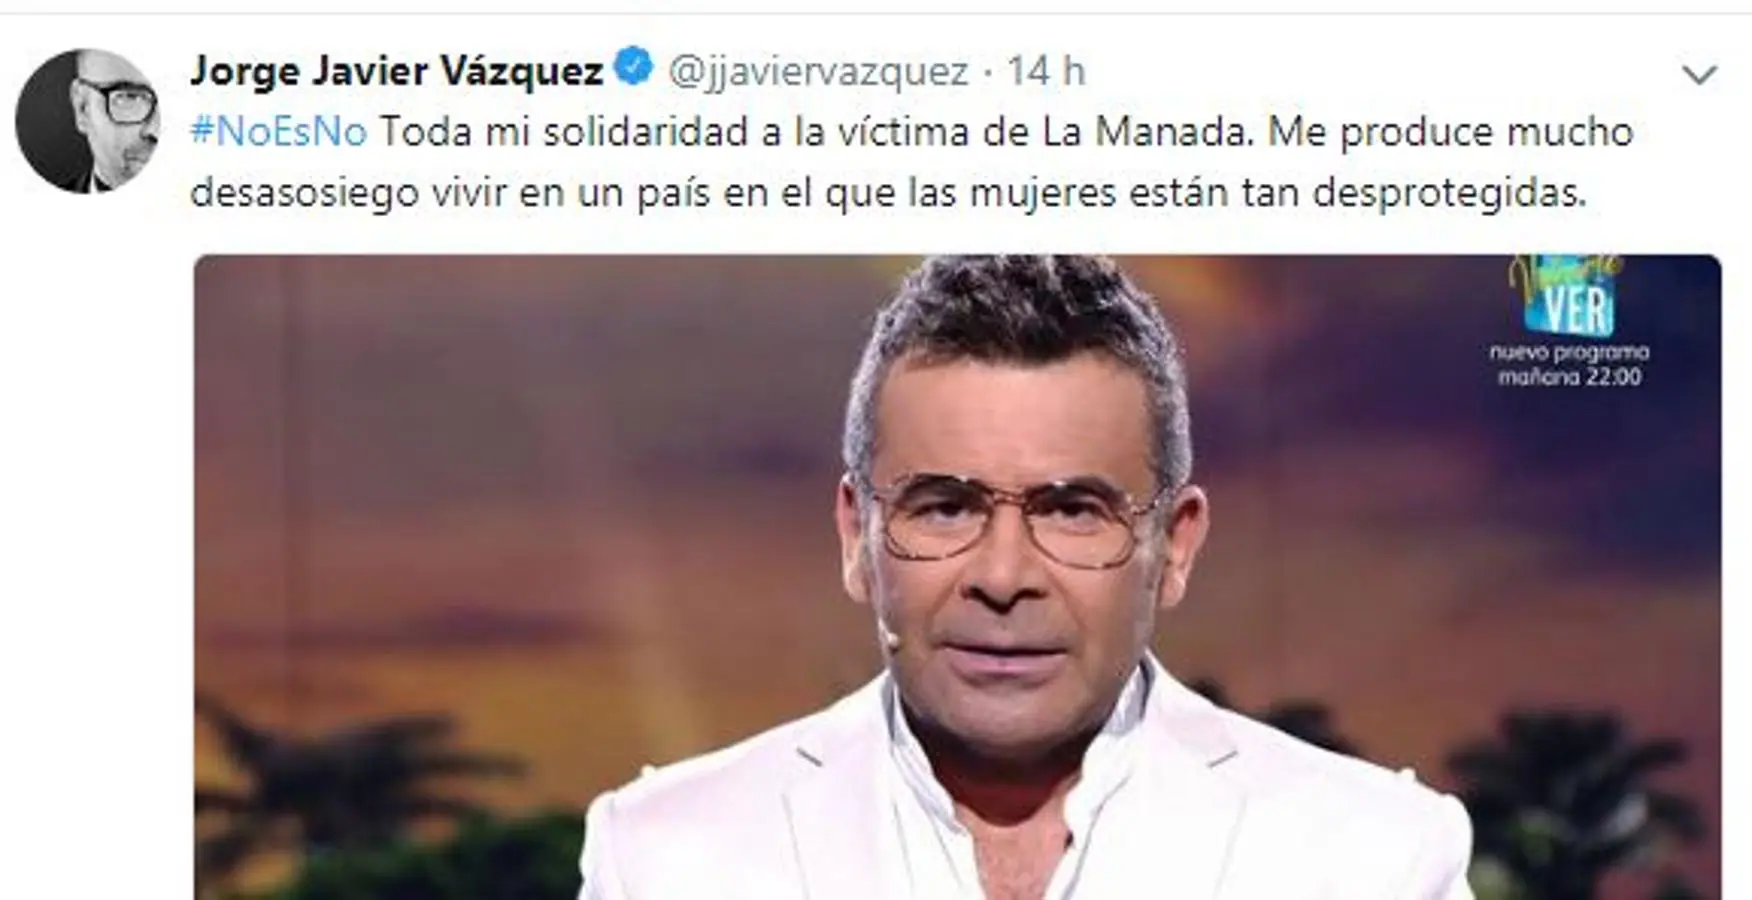 Jorge Javier Vázquez. El presentador de televisión muestra todo su apoyo a la víctima de este caso